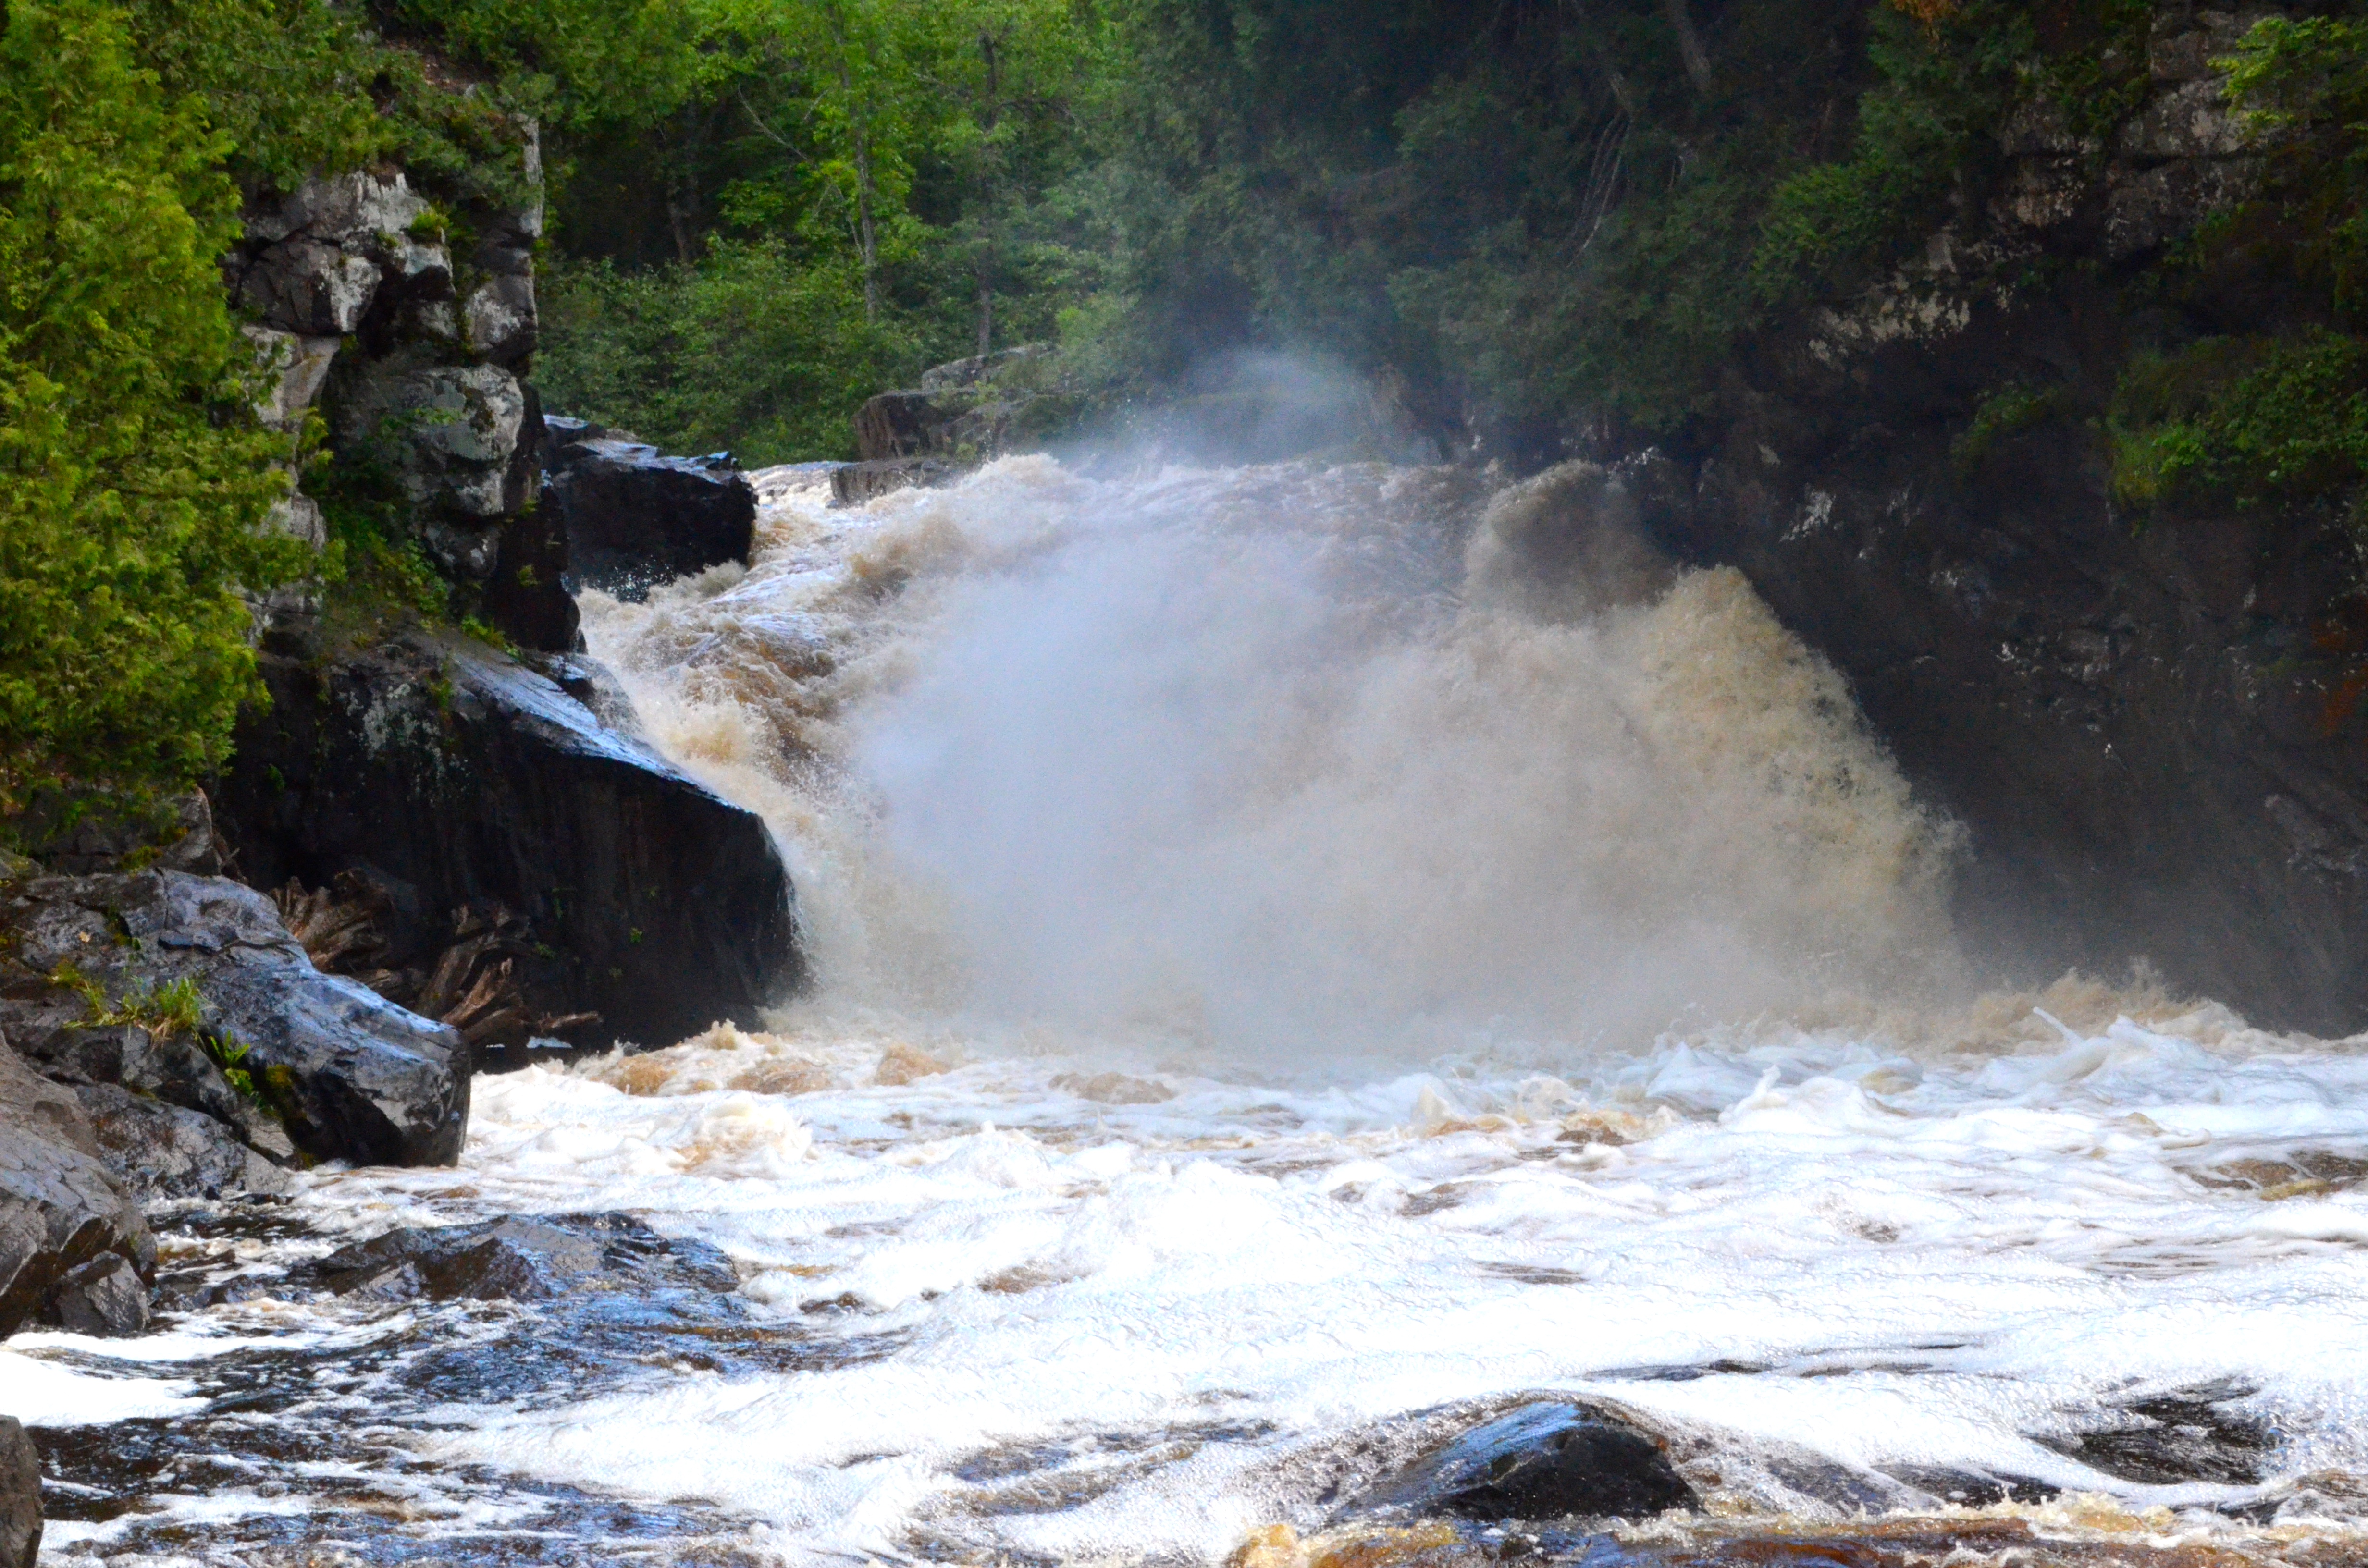 Sturgeon Falls near Baraga